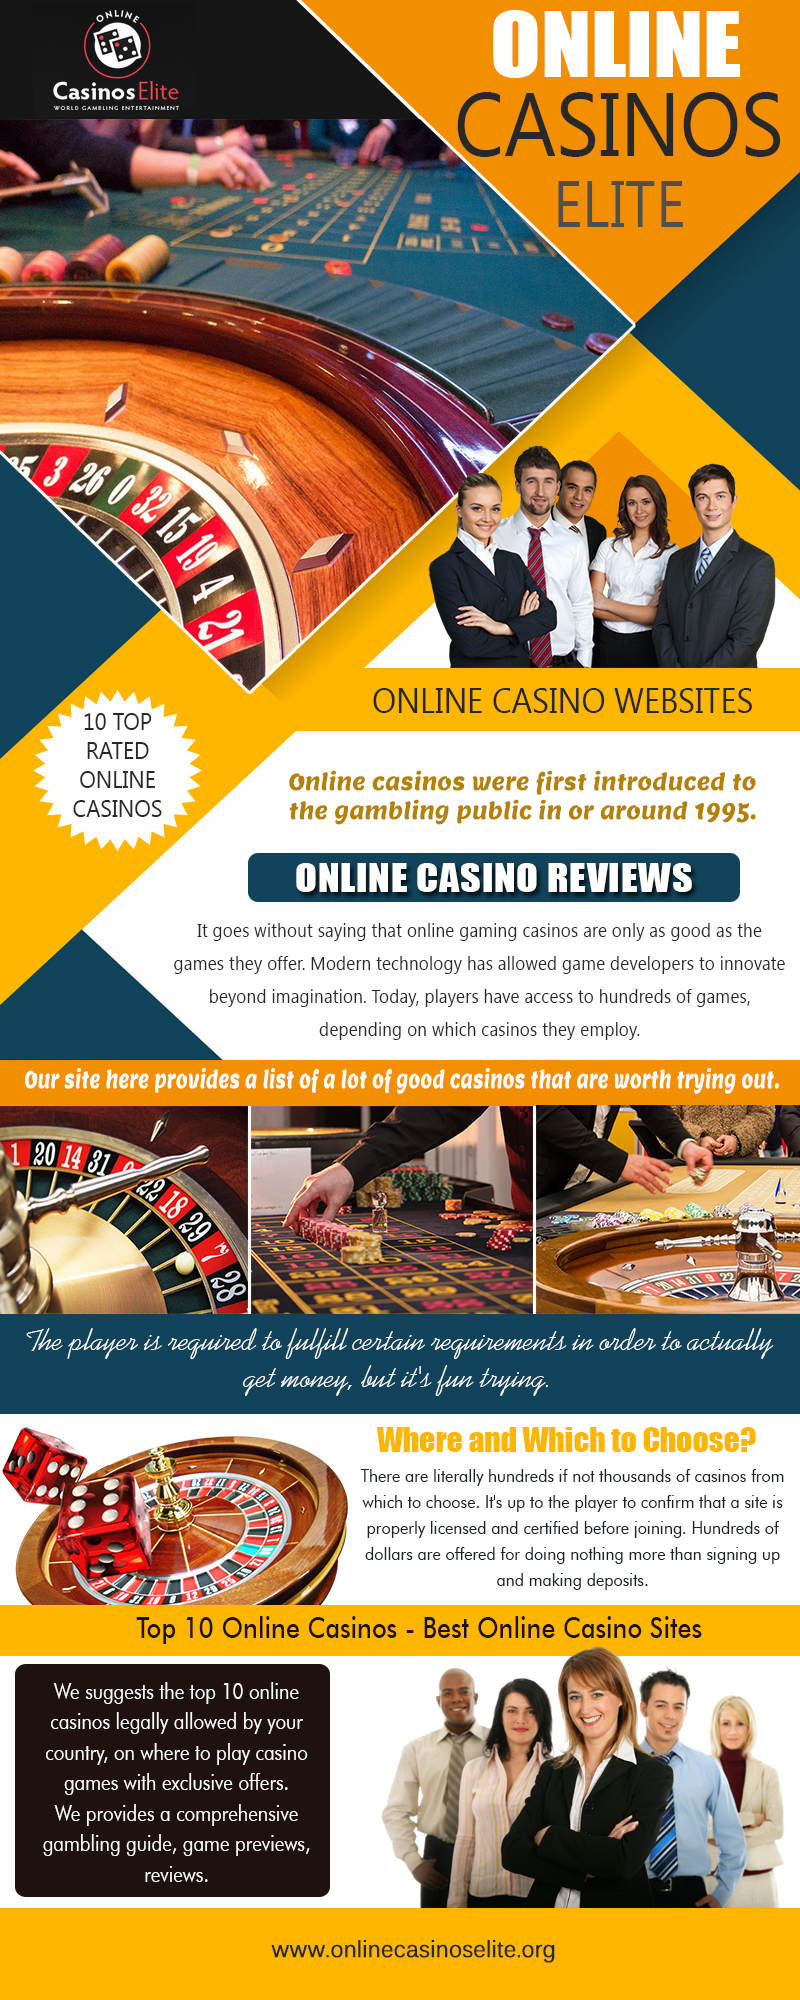 Online Casinos Elite